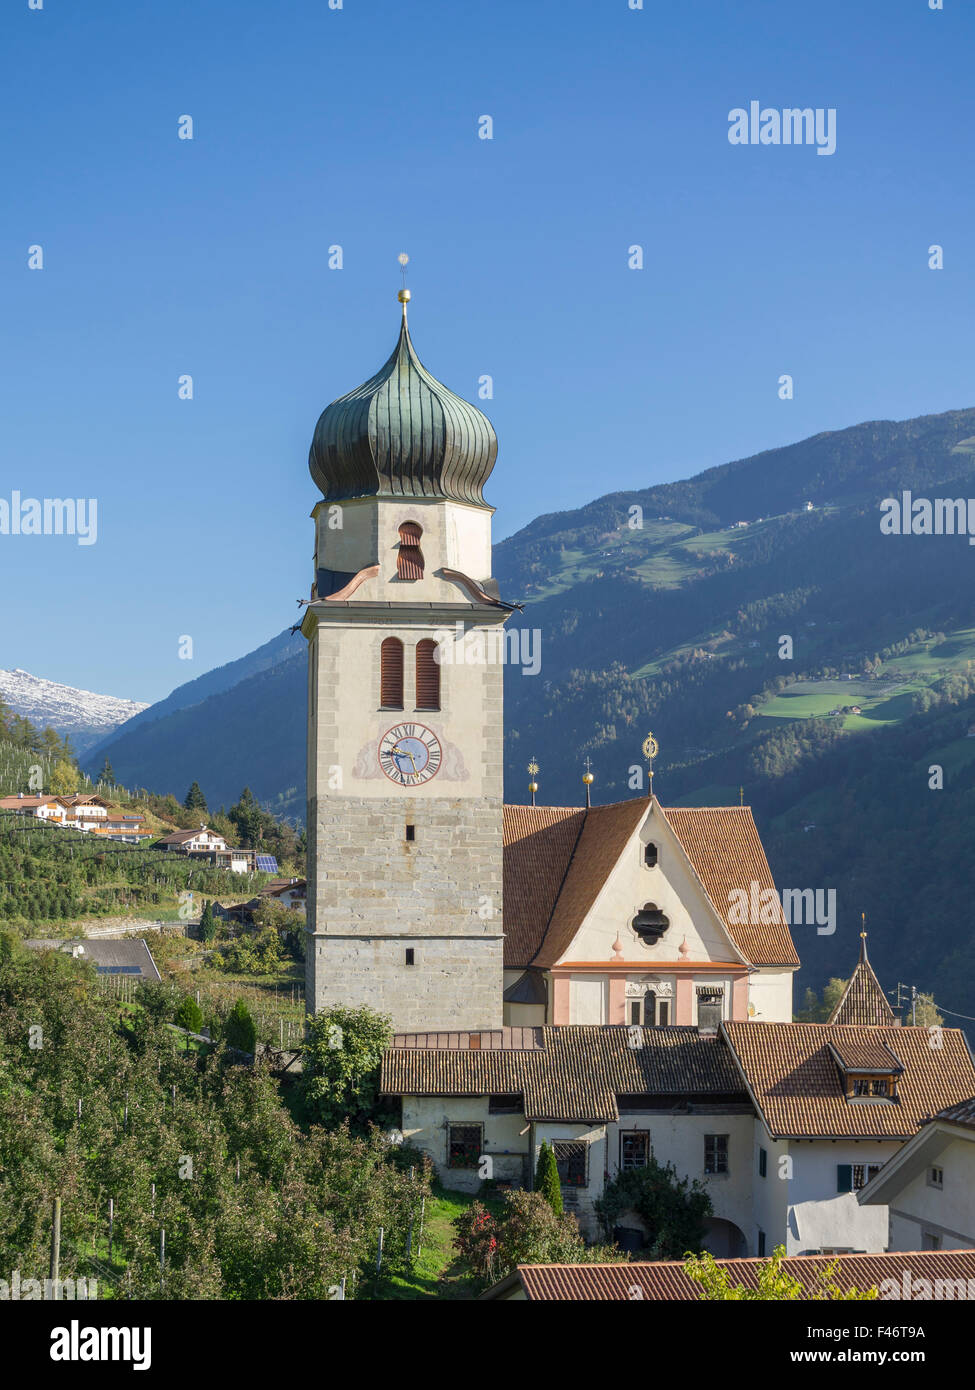 Wallfahrtskirche zu Unserer Lieben Frau der Schmerzen, riffian, Trentino - Alto Adige Provinz Südtirol, Italien Stockfoto